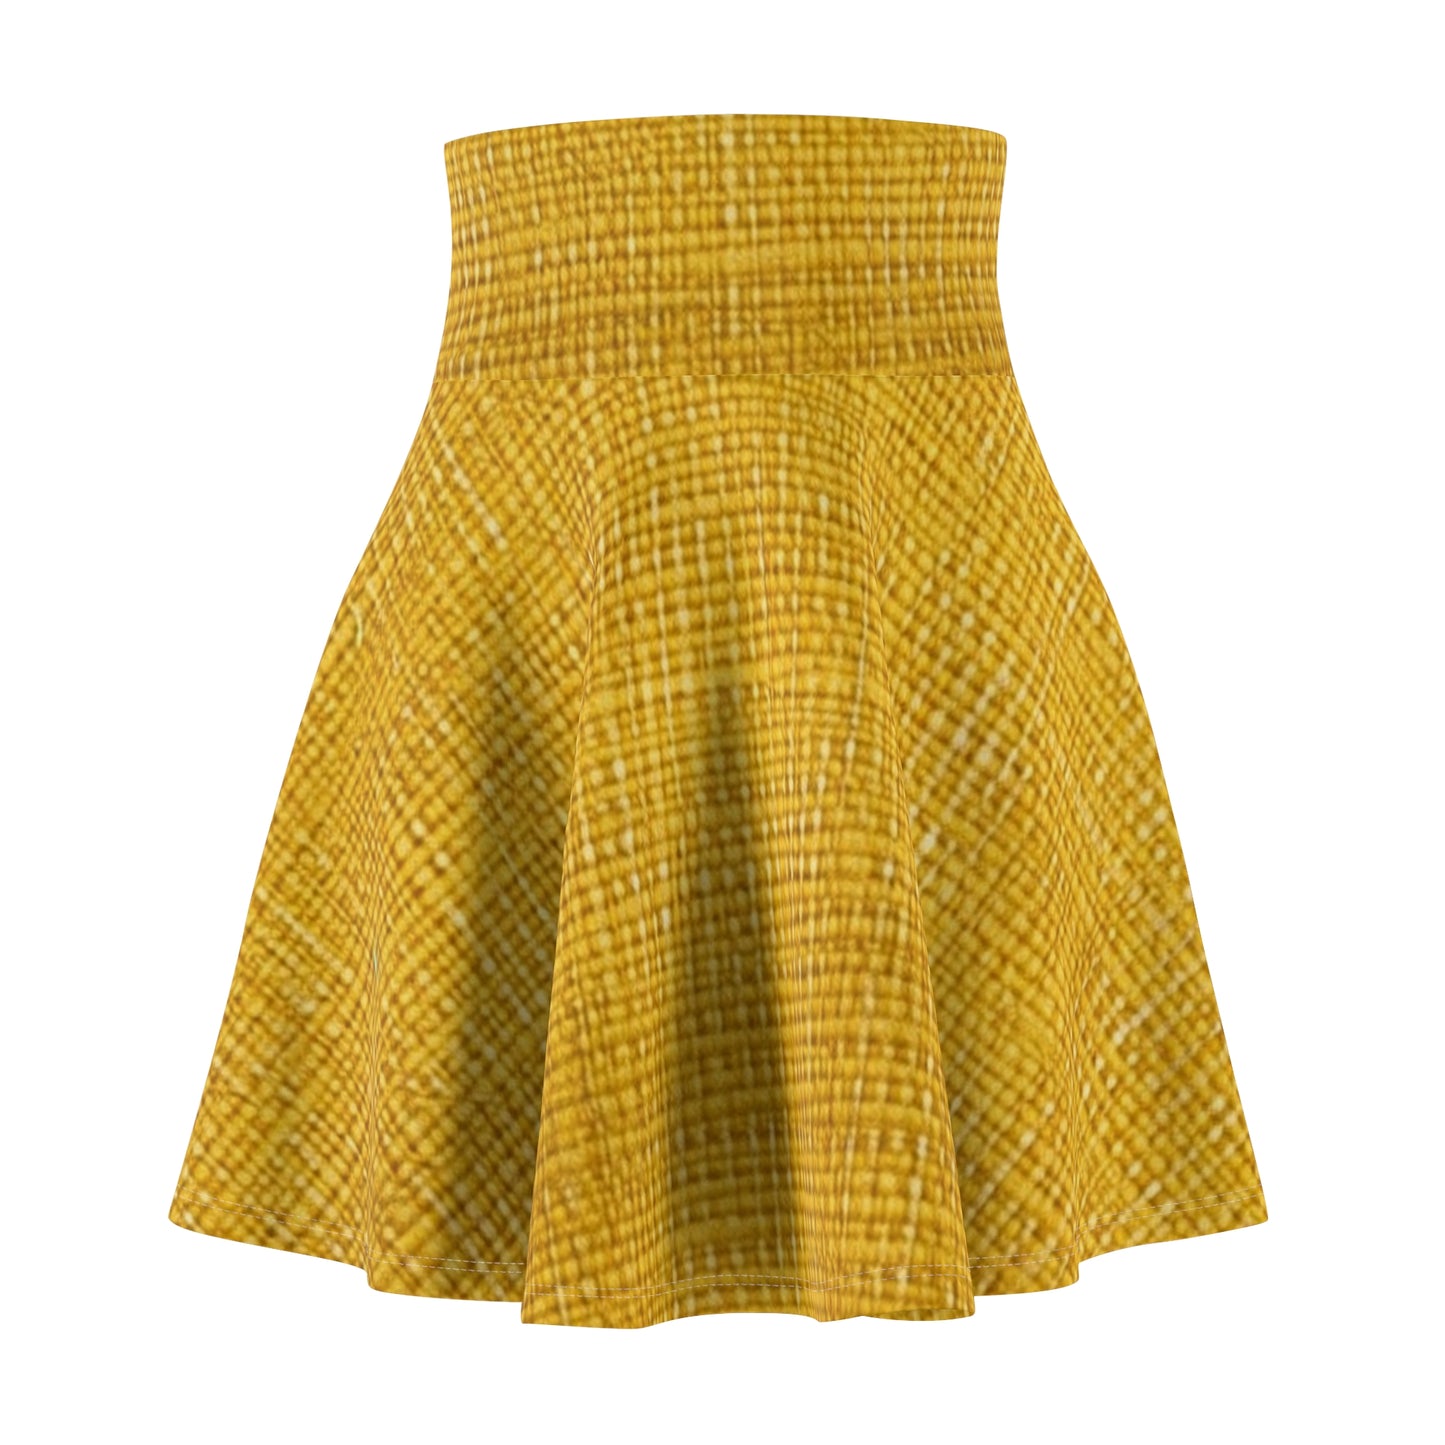 Radiant Sunny Yellow: Denim-Inspired Summer Fabric - Women's Skater Skirt (AOP)